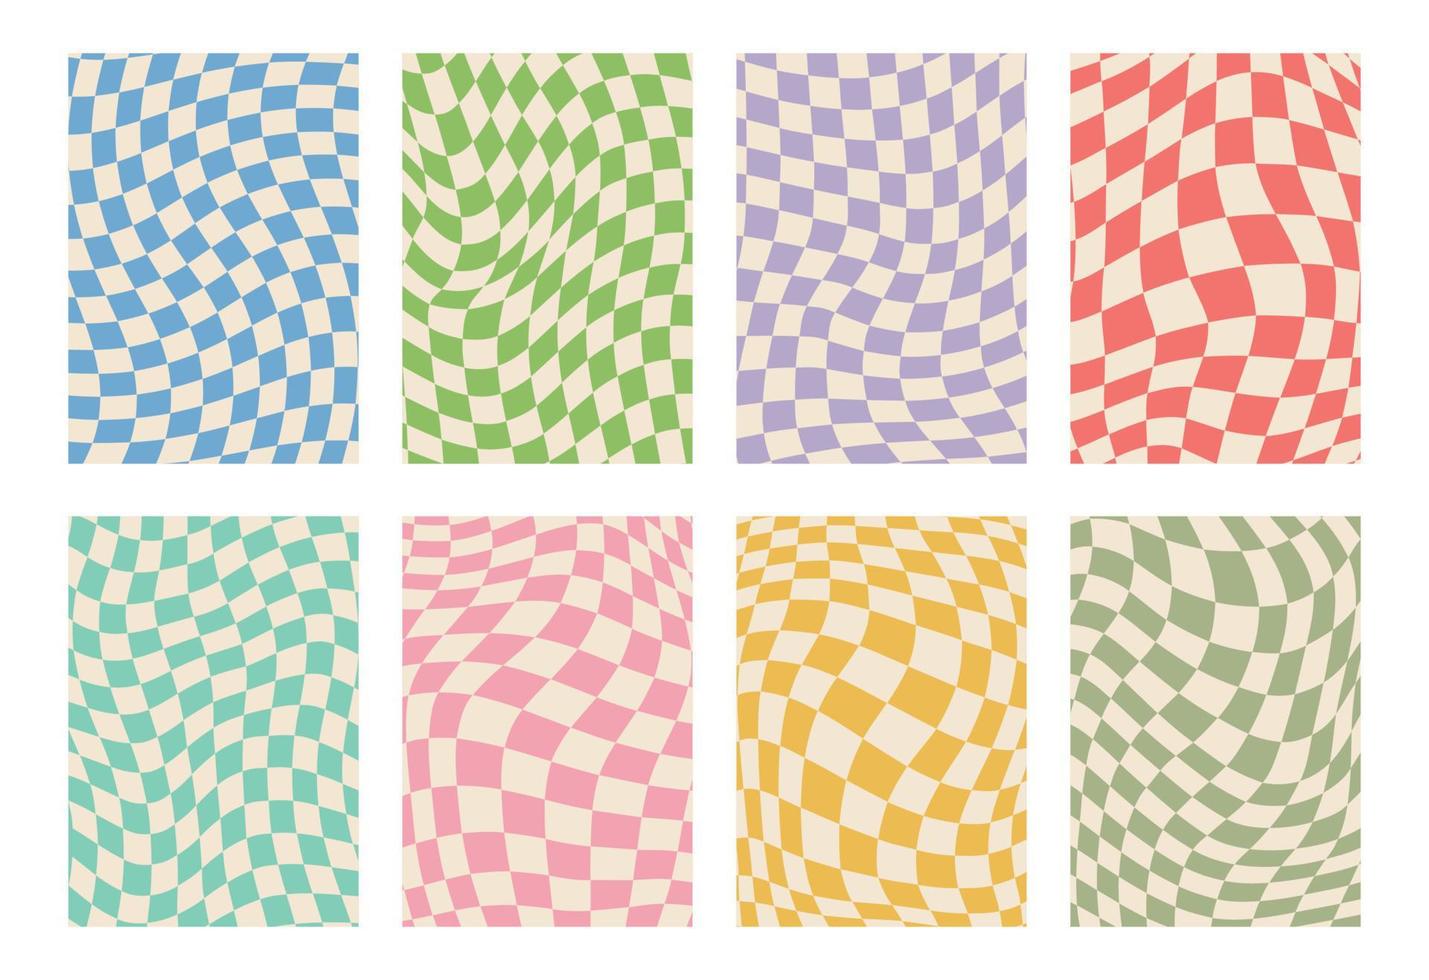 retro reeks van groovy golvend psychedelisch schaakbord in pale pastel kleuren, a4. y2k, telefoon geval achtergrond van de jaren 90. hippie schaakbord sjabloon. psychedelisch retro ontwerp van de Jaren 60 jaren 70. gingang. vector